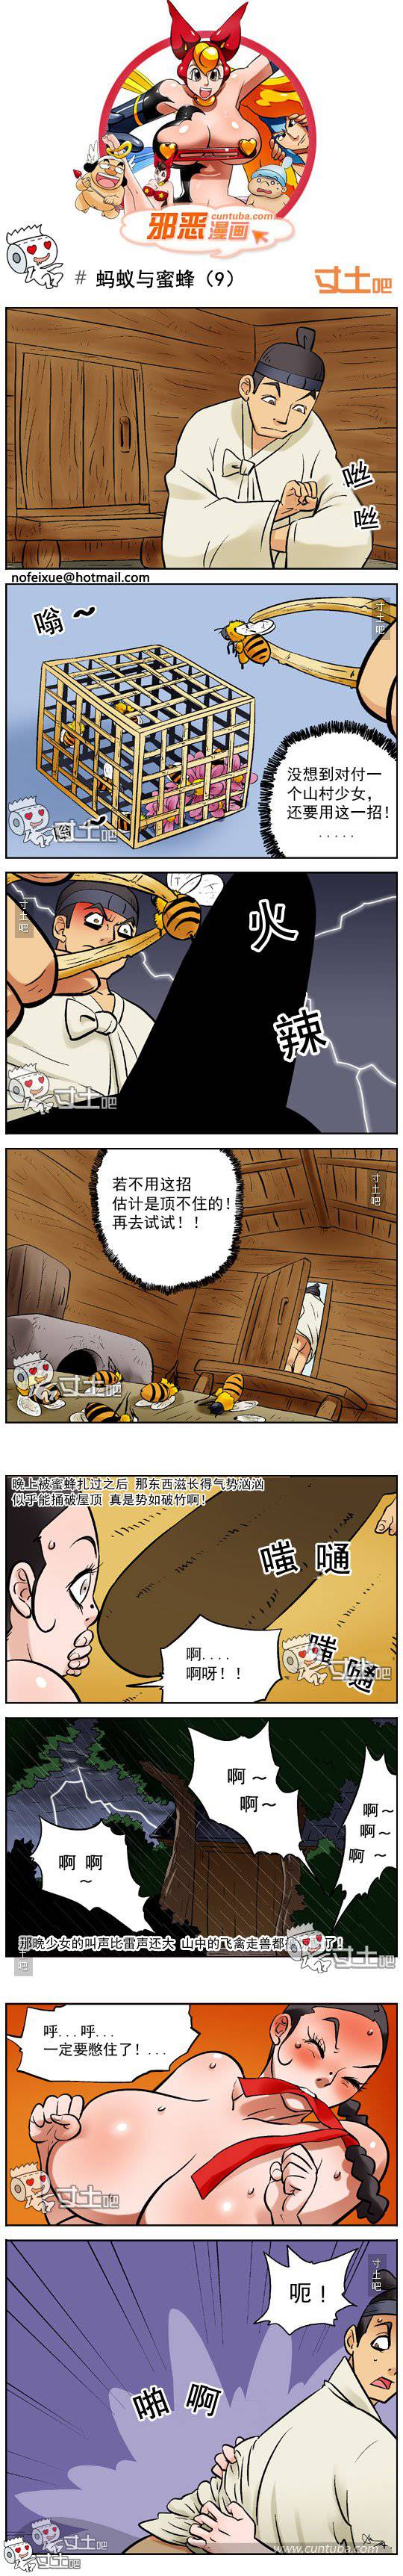 邪恶漫画爆笑囧图第215刊：蚂蚁与蜜蜂